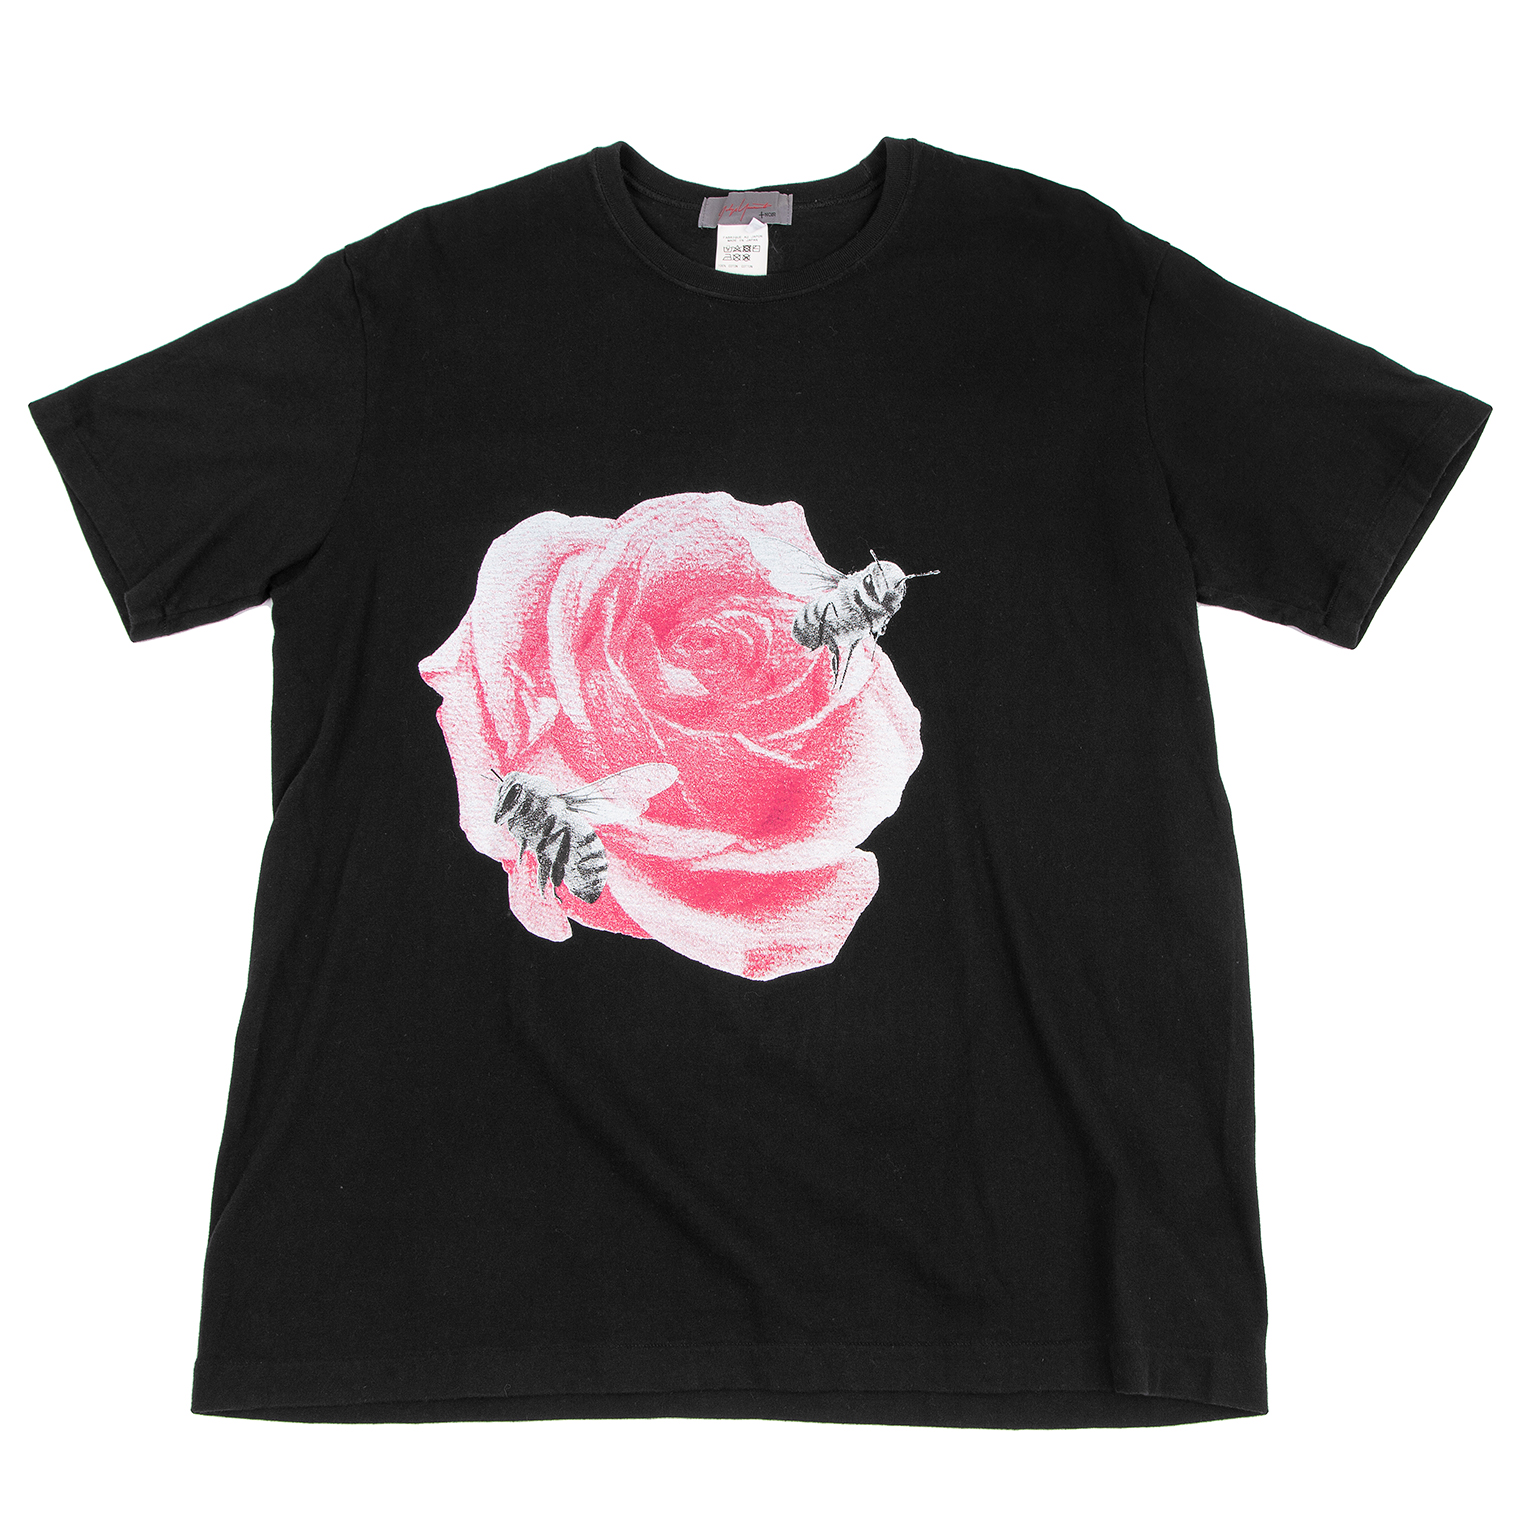 【7/6まで】SUZUME ROSE PRINT T-Shirt